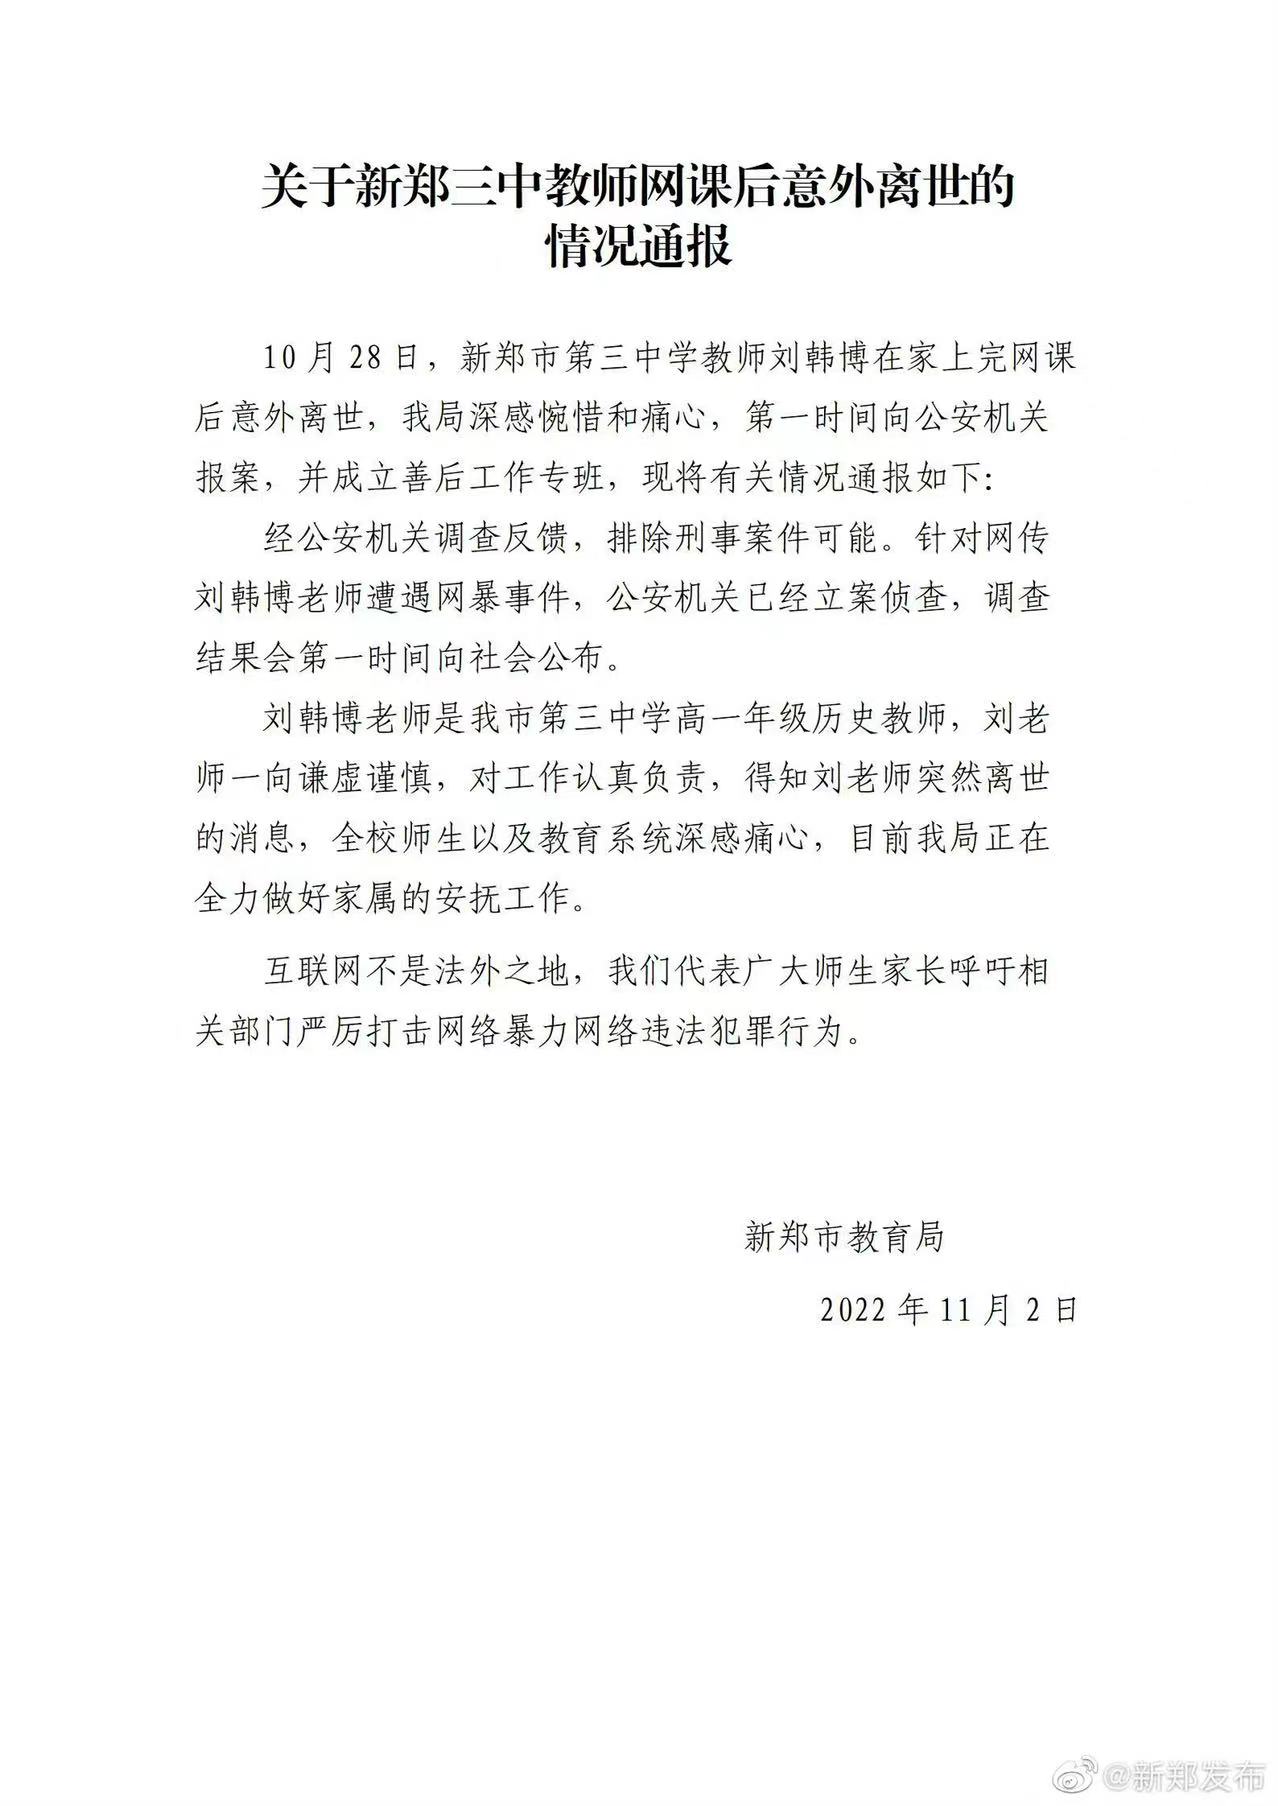 ▲11月2日，新郑市教育局发布的情况通报。图/新郑发布官方微博